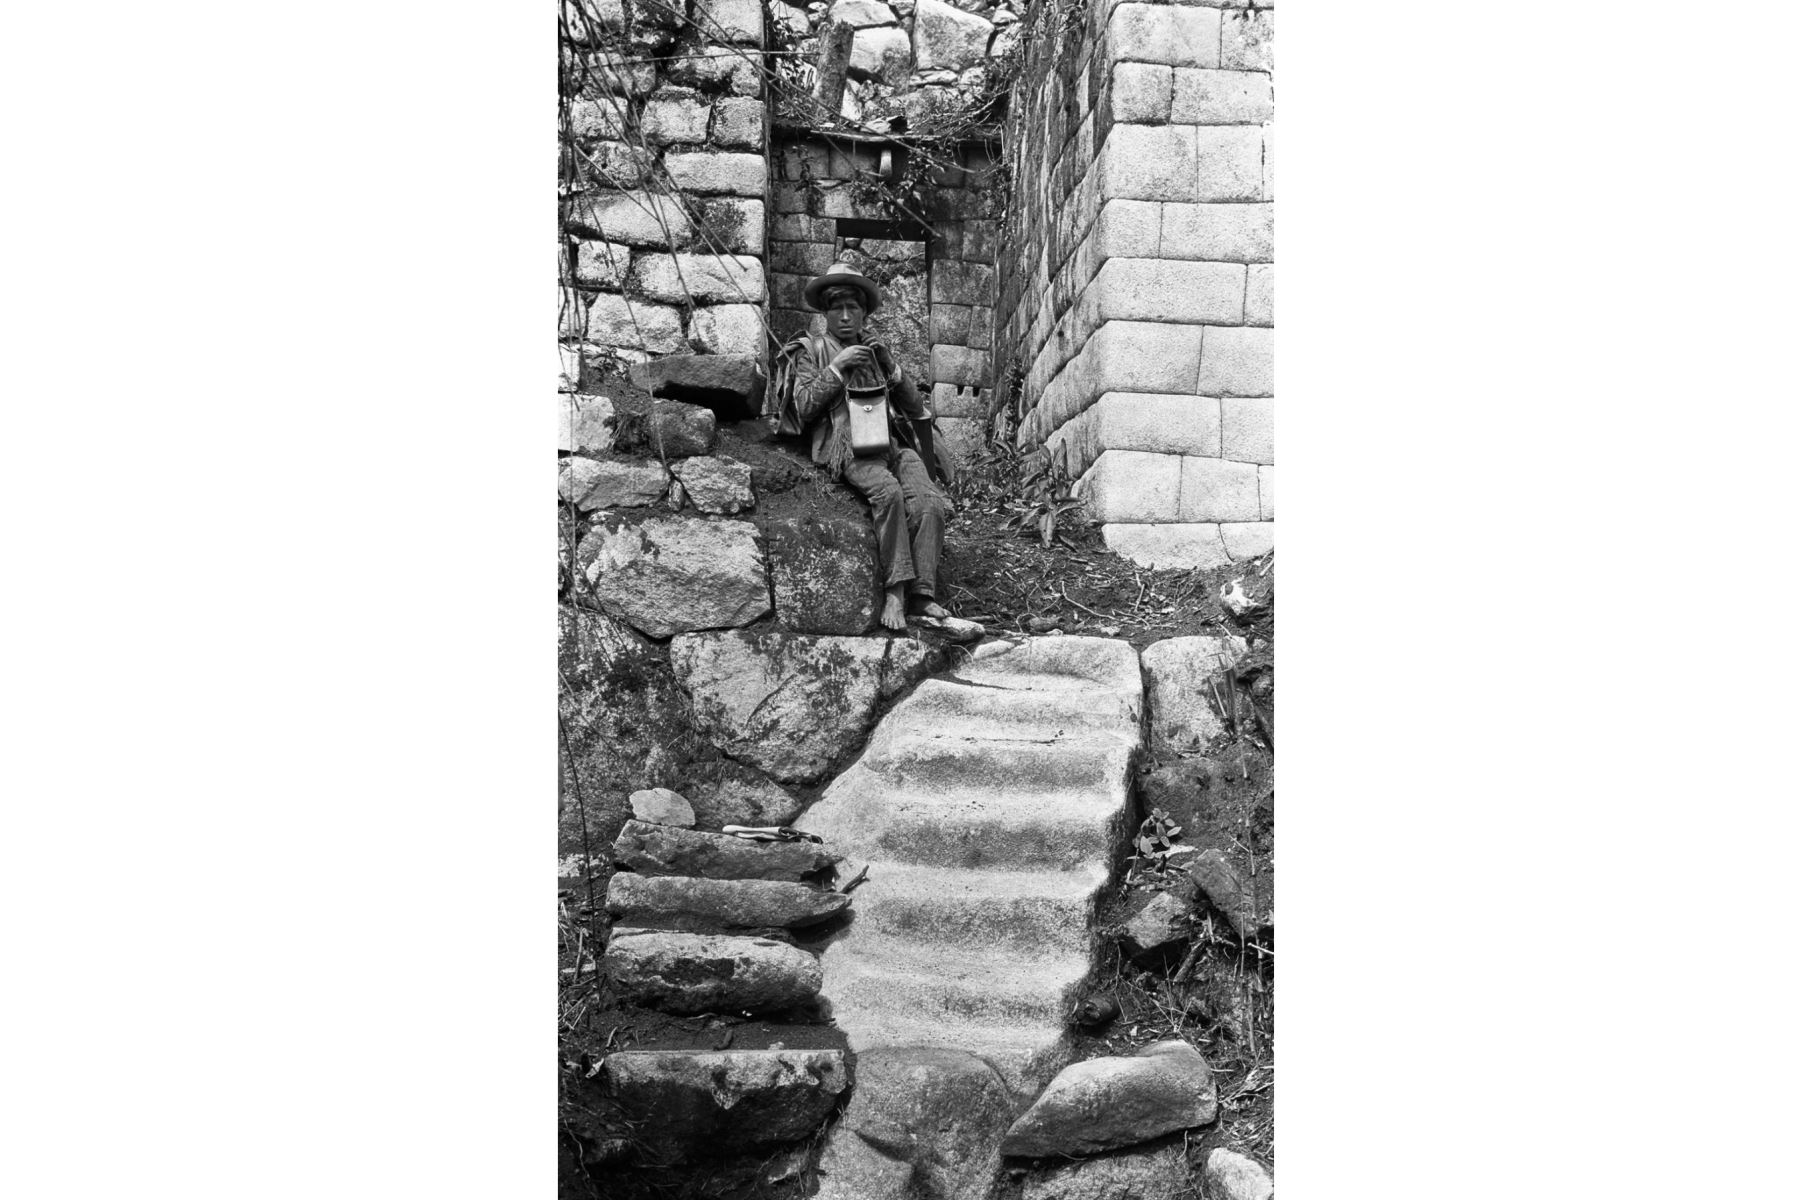 La escalera en esta imagen conduce desde las casas bellamente hechas de lo que se ha llamado el Grupo Princesa, debido a la exquisitez del trabajo en piedra, hasta las casas más toscas que alguna vez fueron ocupadas por los retenedores y los miembros menos importantes del familia que ocupaba esta sección de la ciudad.
Foto:  Hiram Bingham / National Geographic